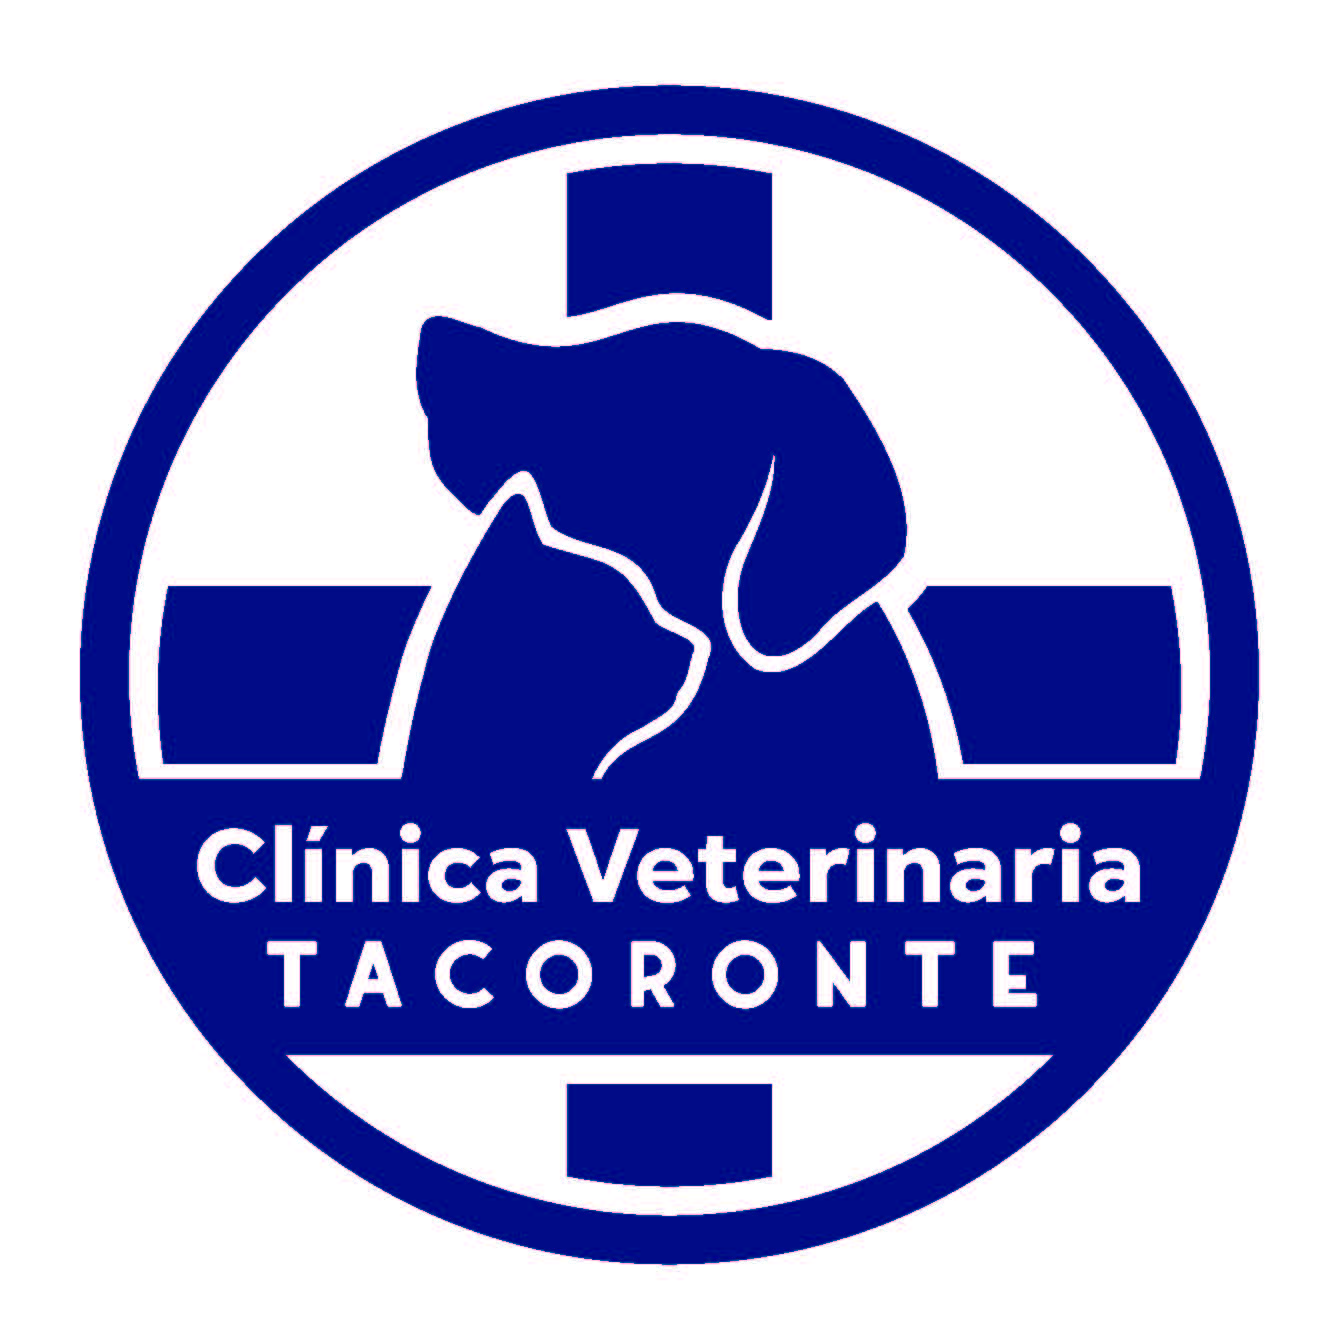 Clinica Veterinaria Tacoronte